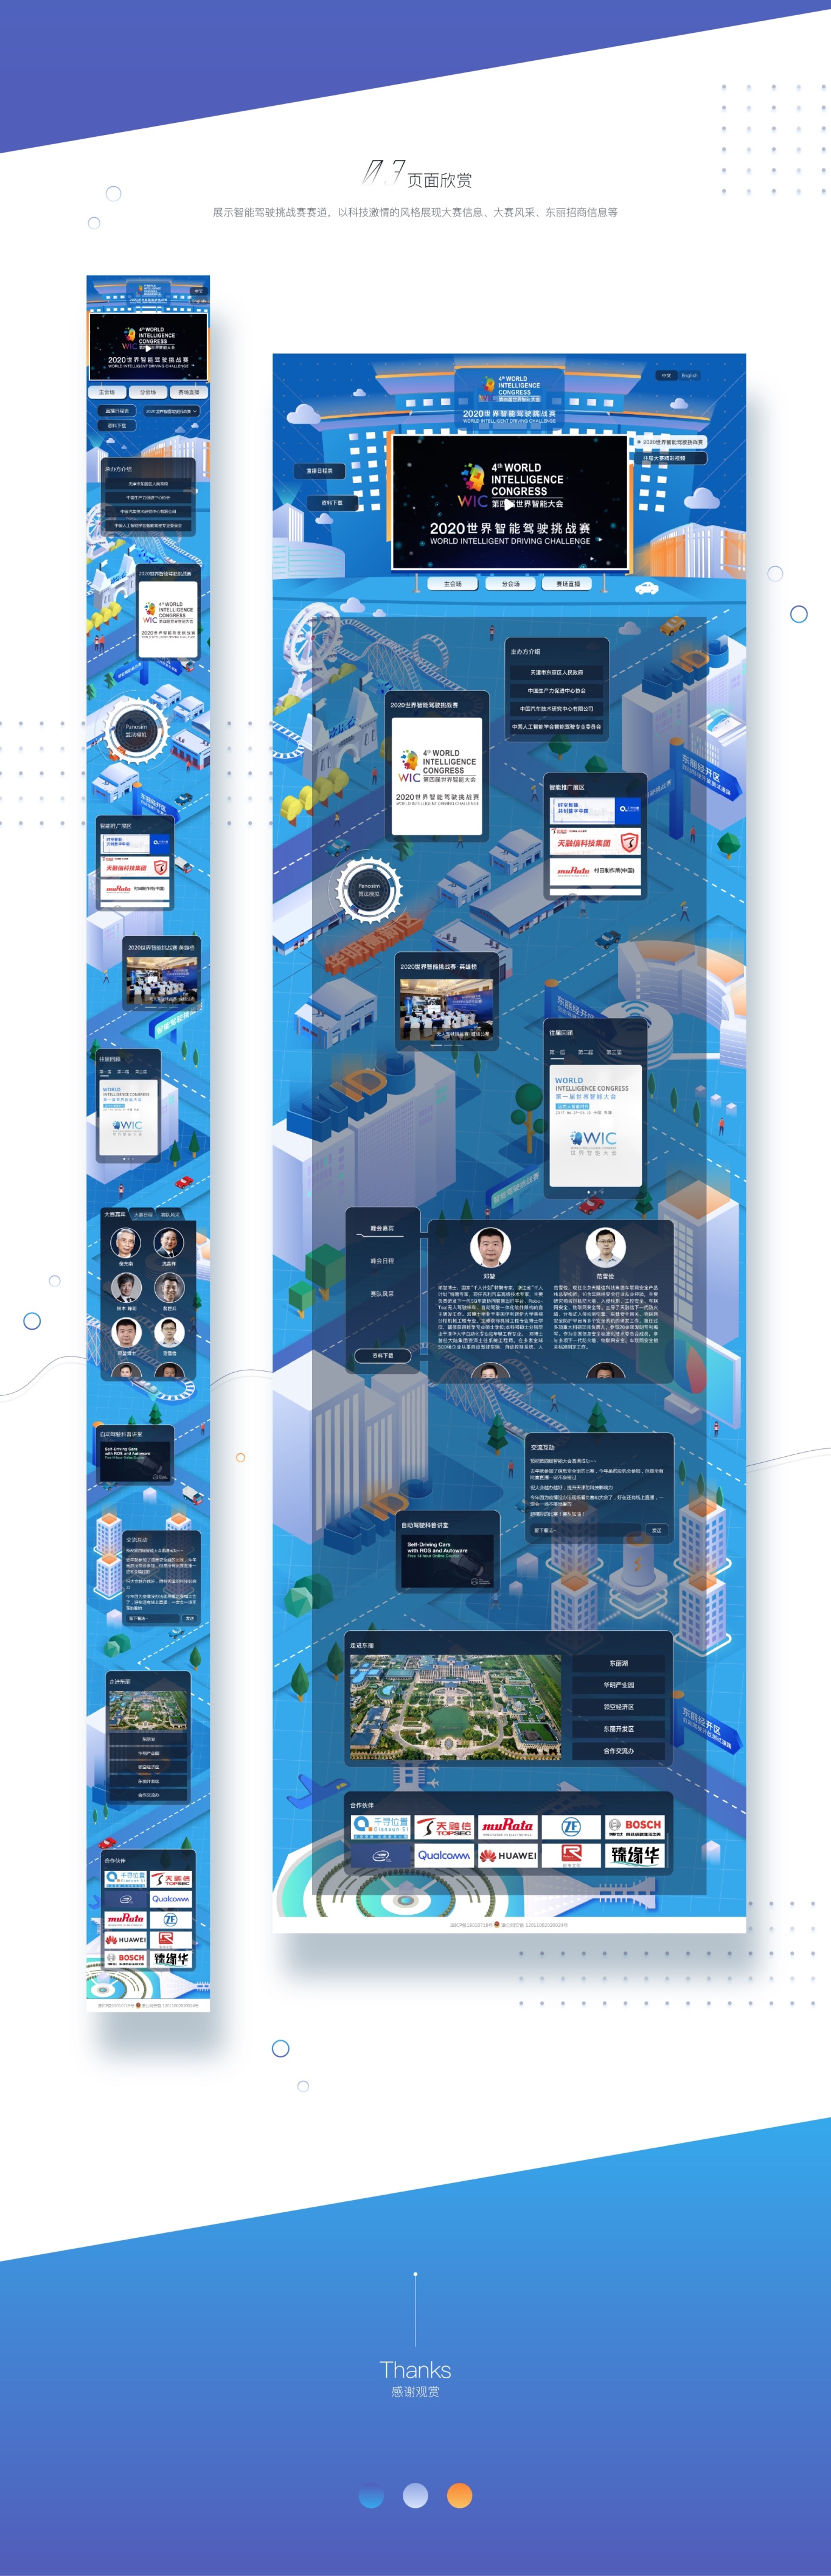 2020第四届世界智能大赛-赛事活动展示网站图1